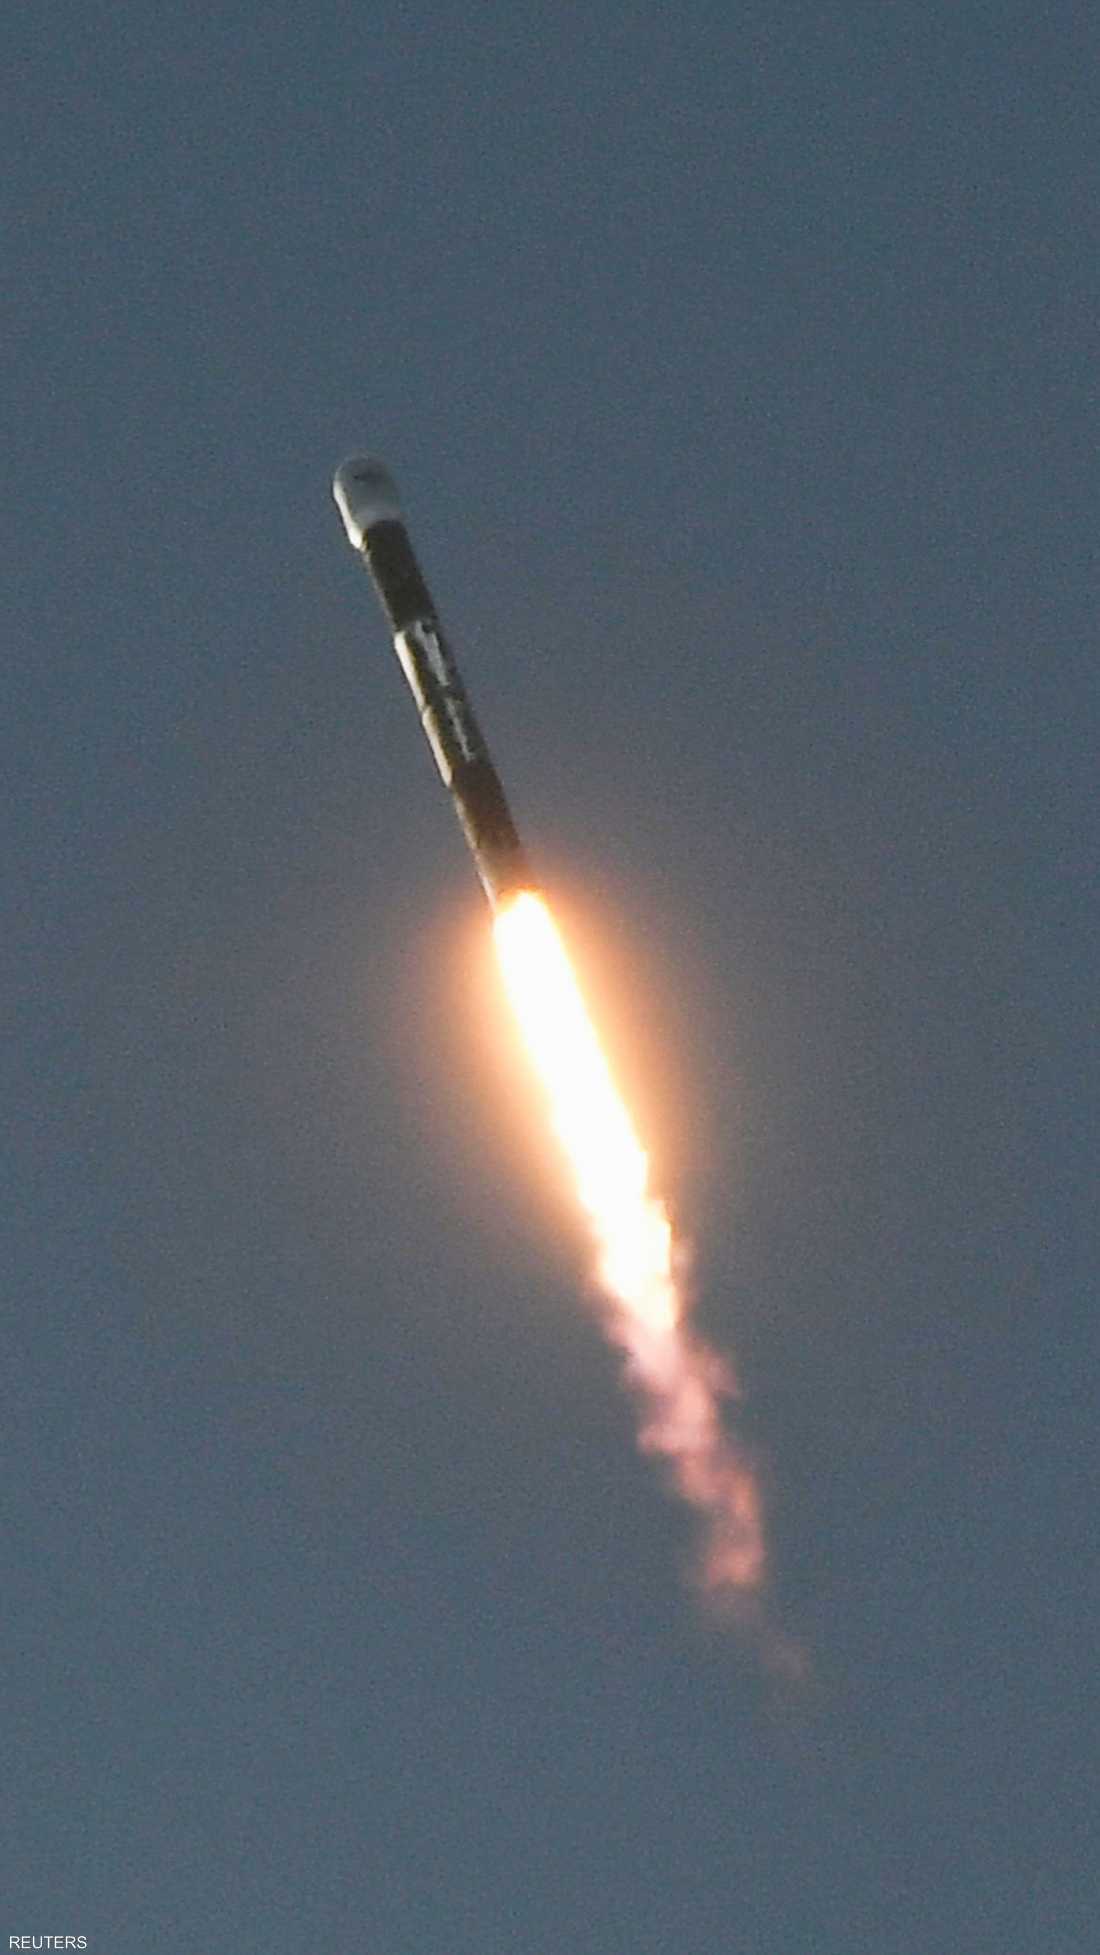 شركة فايرفلاي إيروسبيس تجري أول تجربة للإطلاق صاروخ ألفا